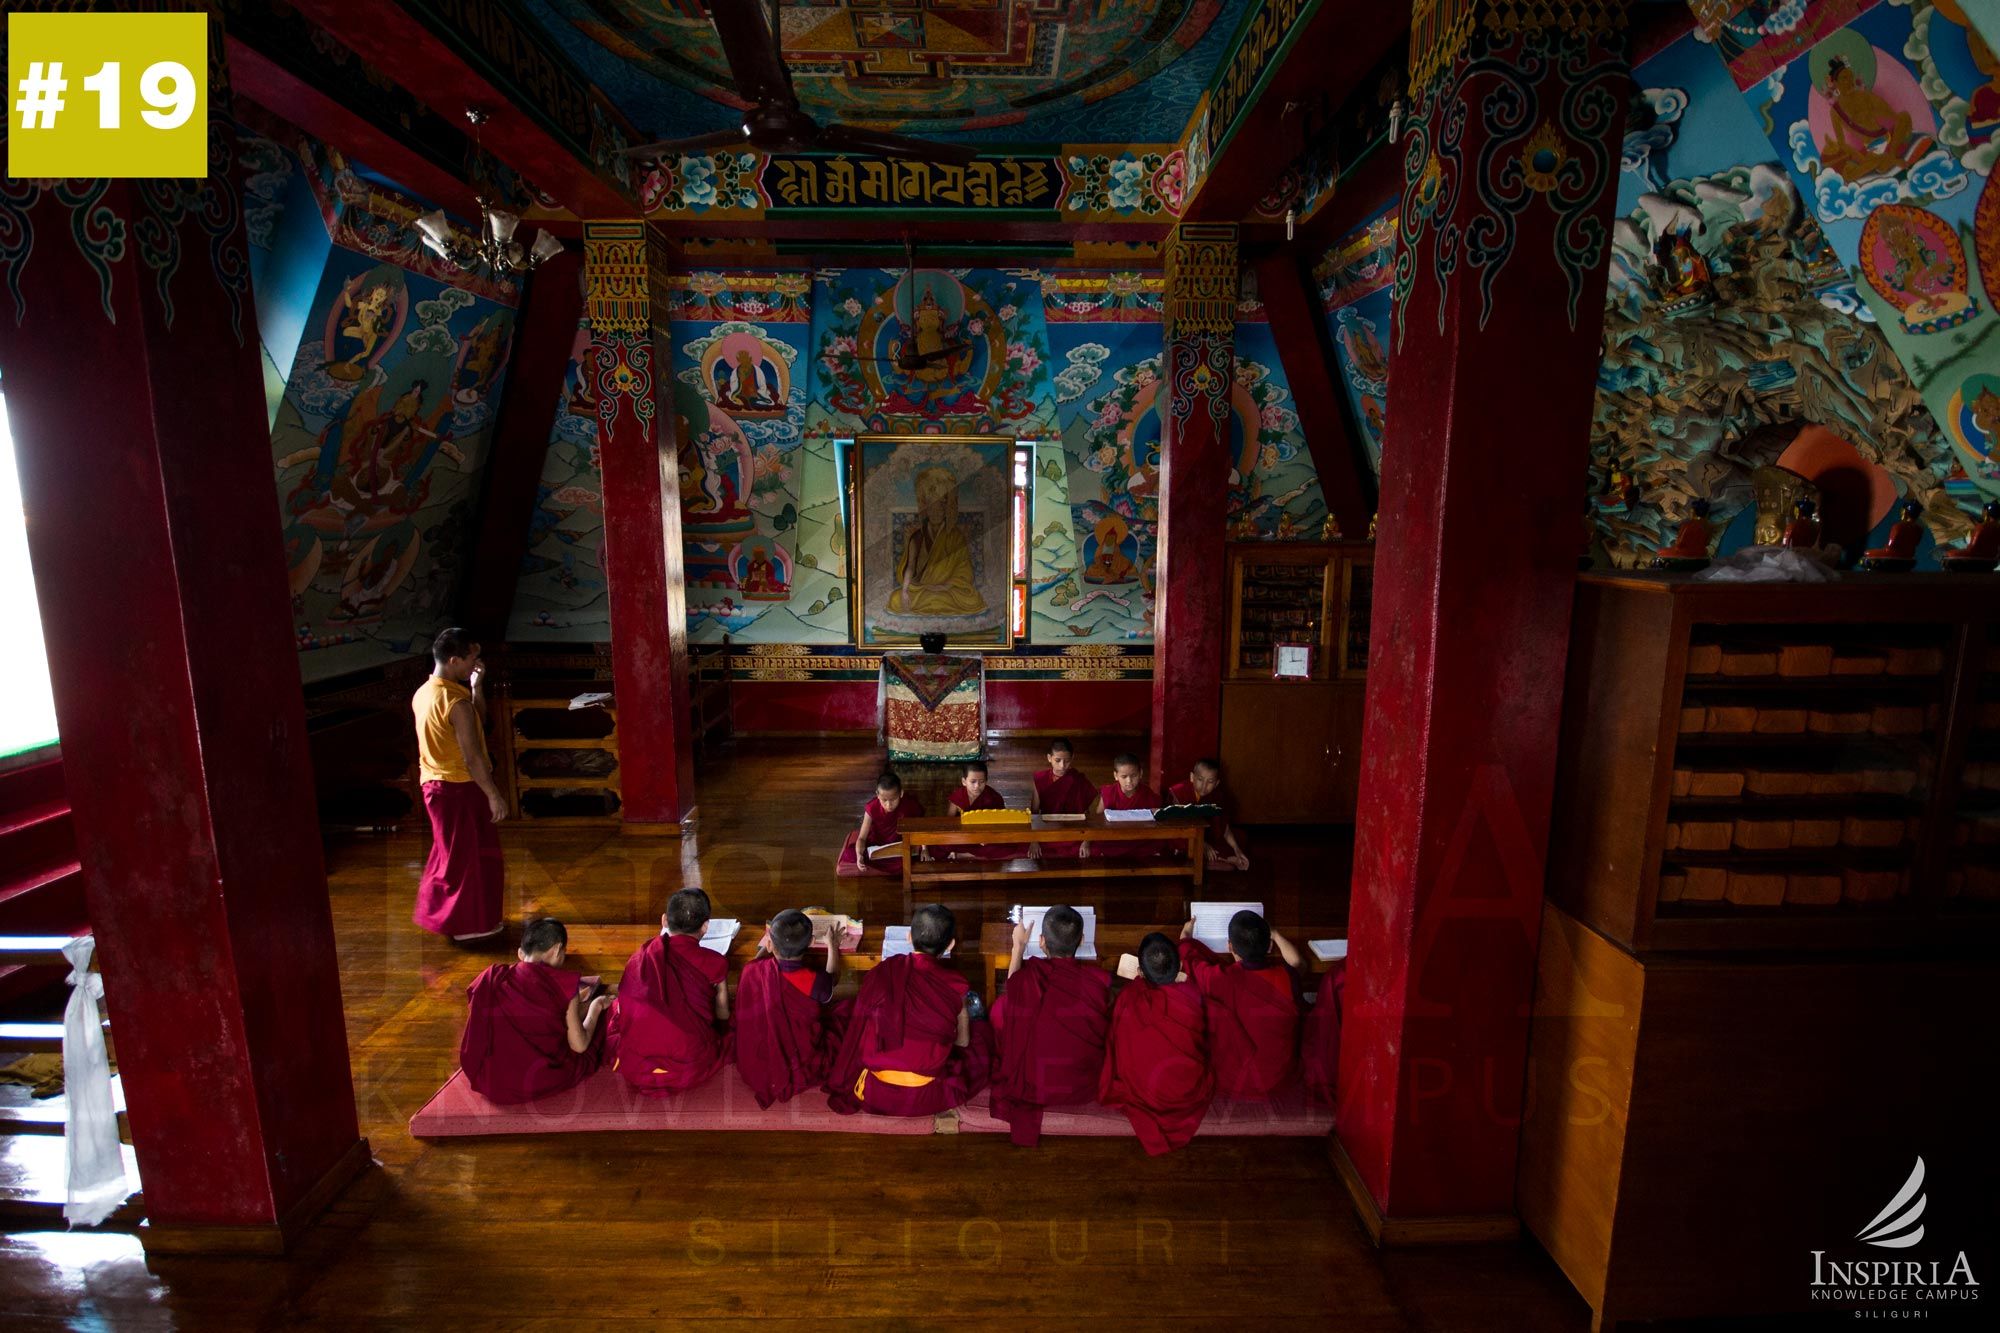 salugara-monastery-monks-prayers-studies-1001-things-to-do-inspiria-knowledge-campus-siliguri-wb